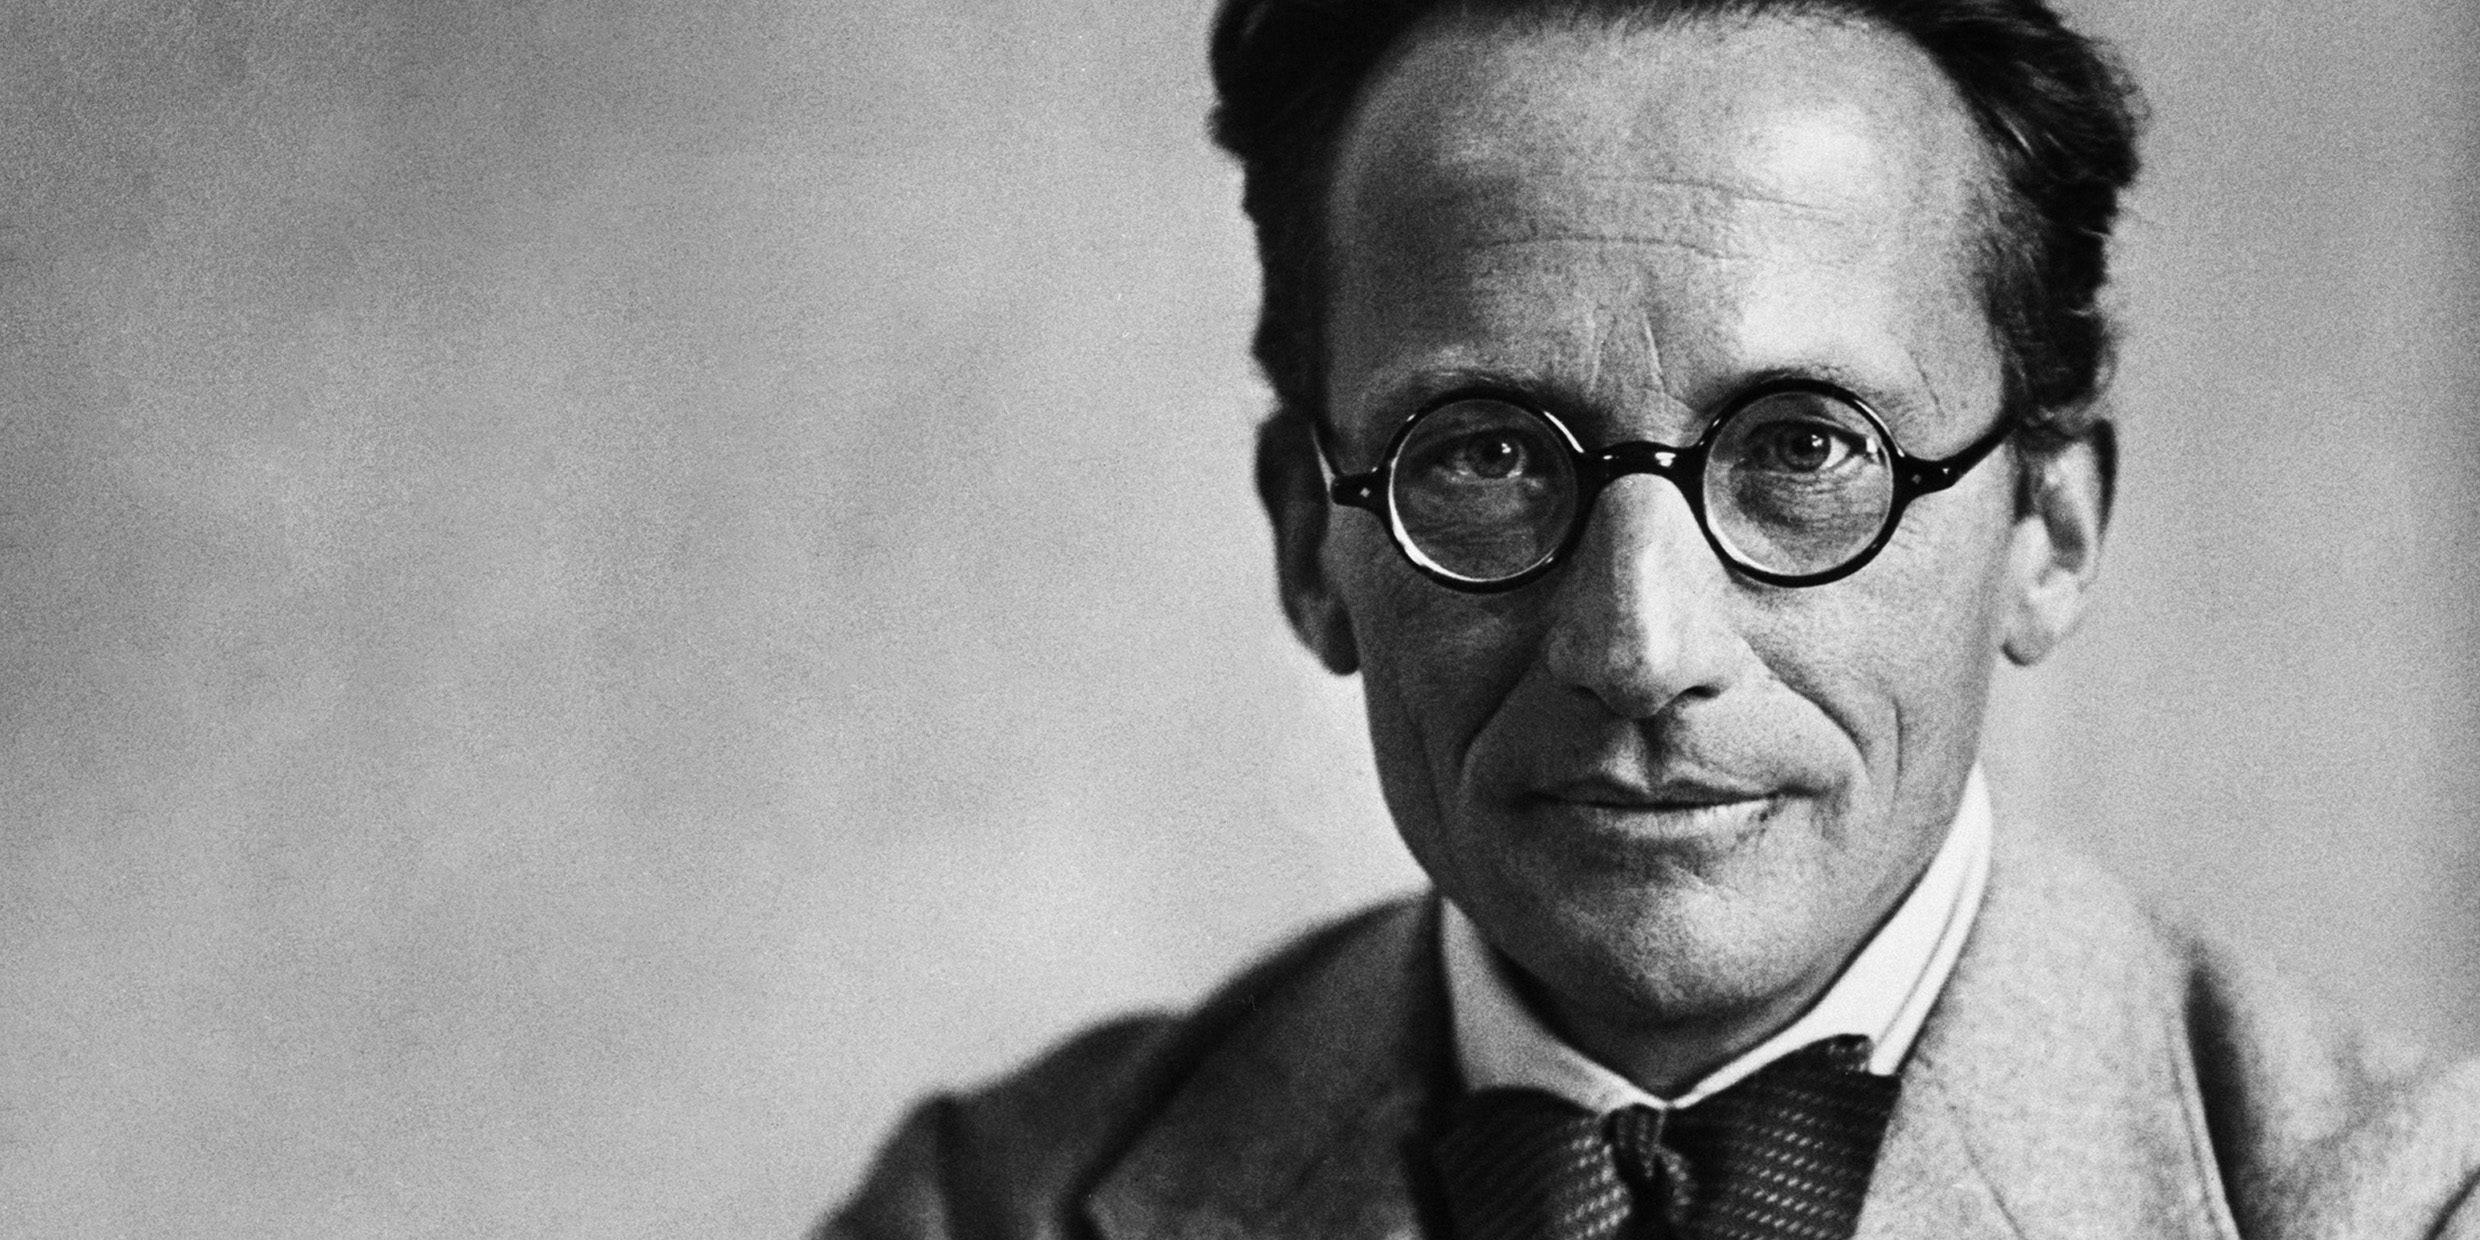 Image of Erwin Schrödinger